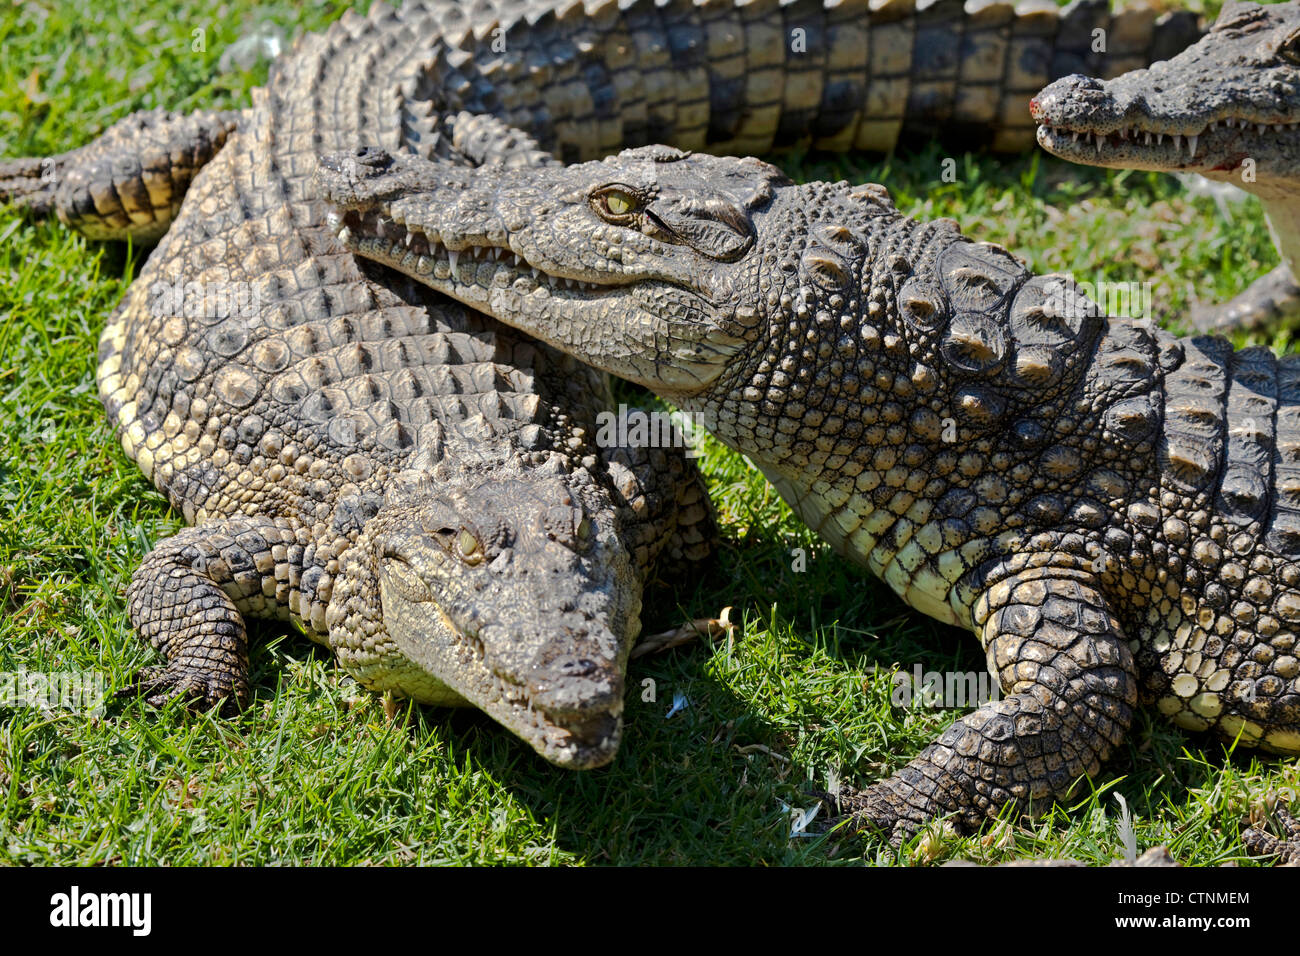 Les crocodiles du Nil, Crocodylus niloticus, ferme aux crocodiles, Johannesburg, Afrique du Sud Banque D'Images